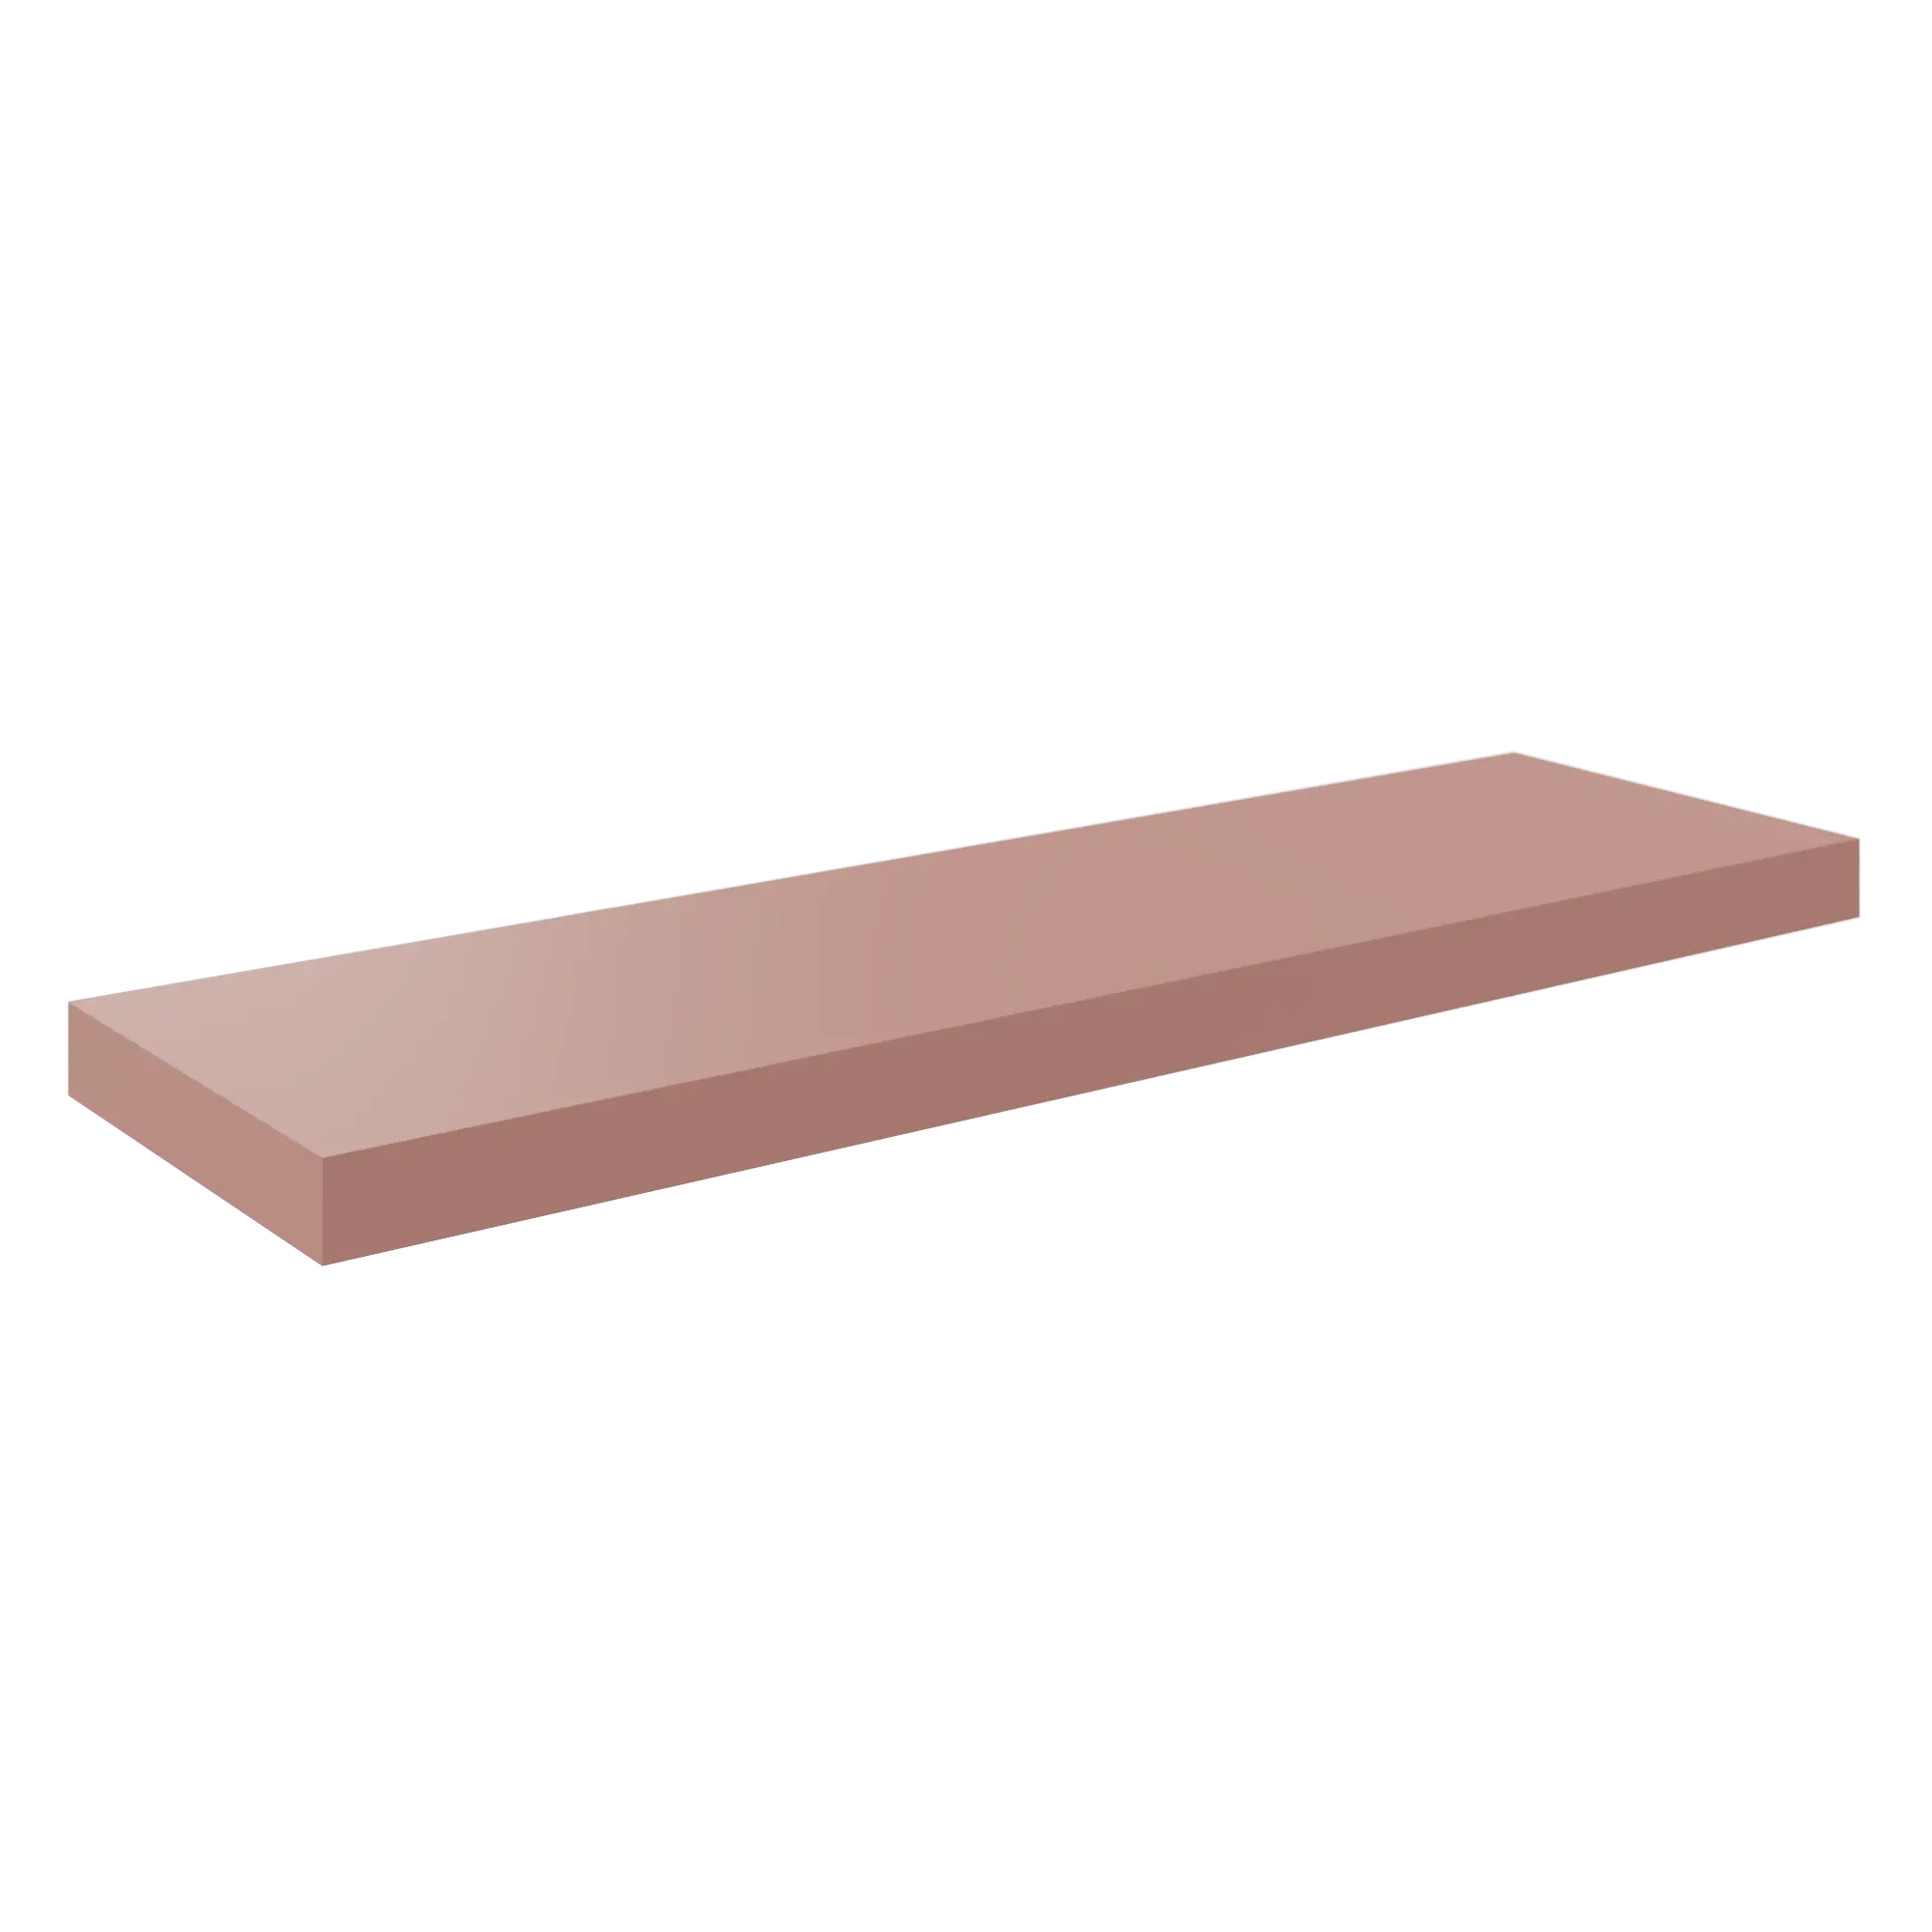 Estante spaceo rectangular en color rosa de 80x3.8x23.5 cm de la marca SPACEO